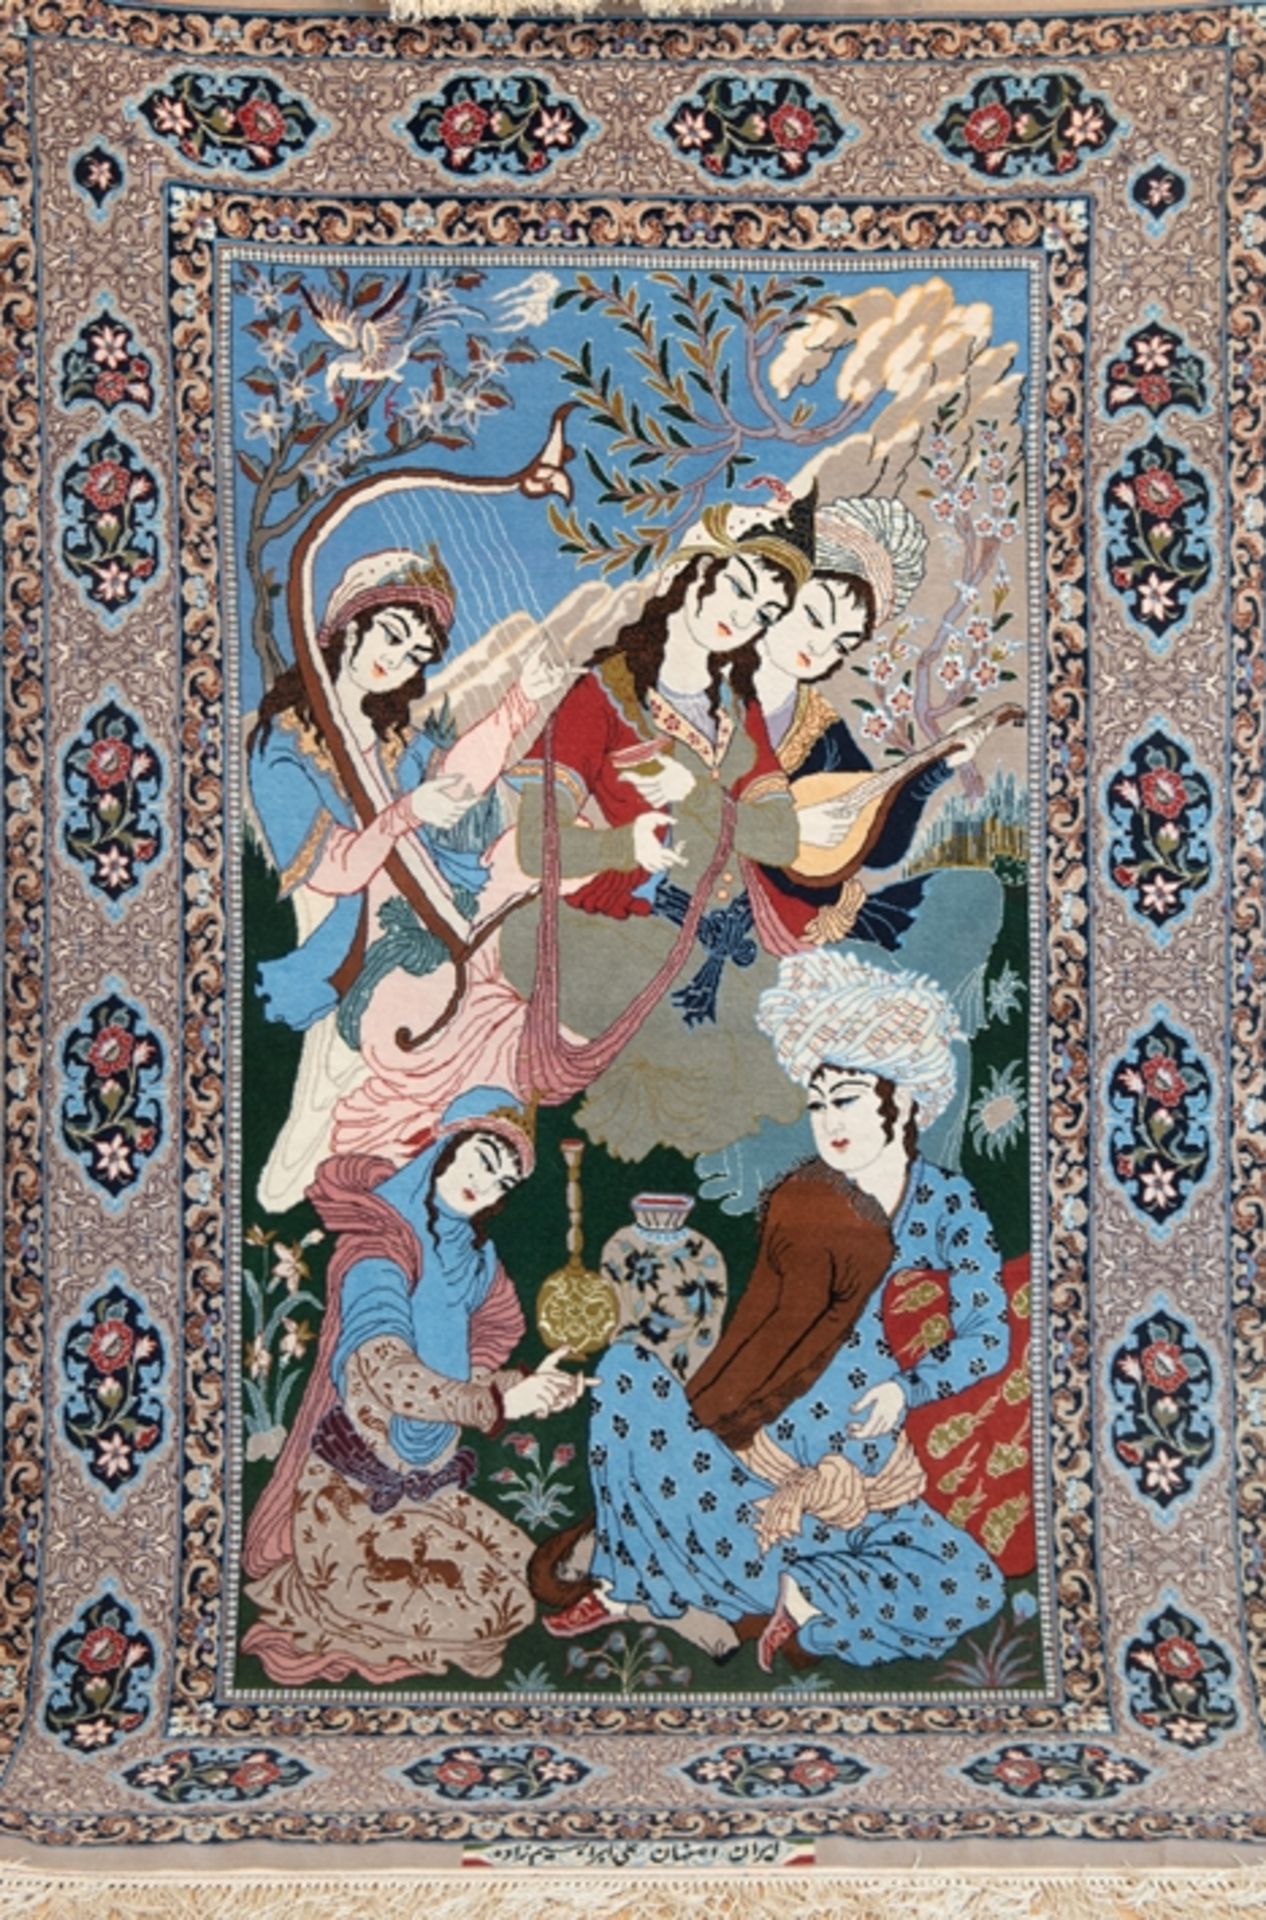 Bild-Teppich, Isfahan, Korkwolle auf Seide, signiert, figürlich, Darstellung eines Orientalen mit 4